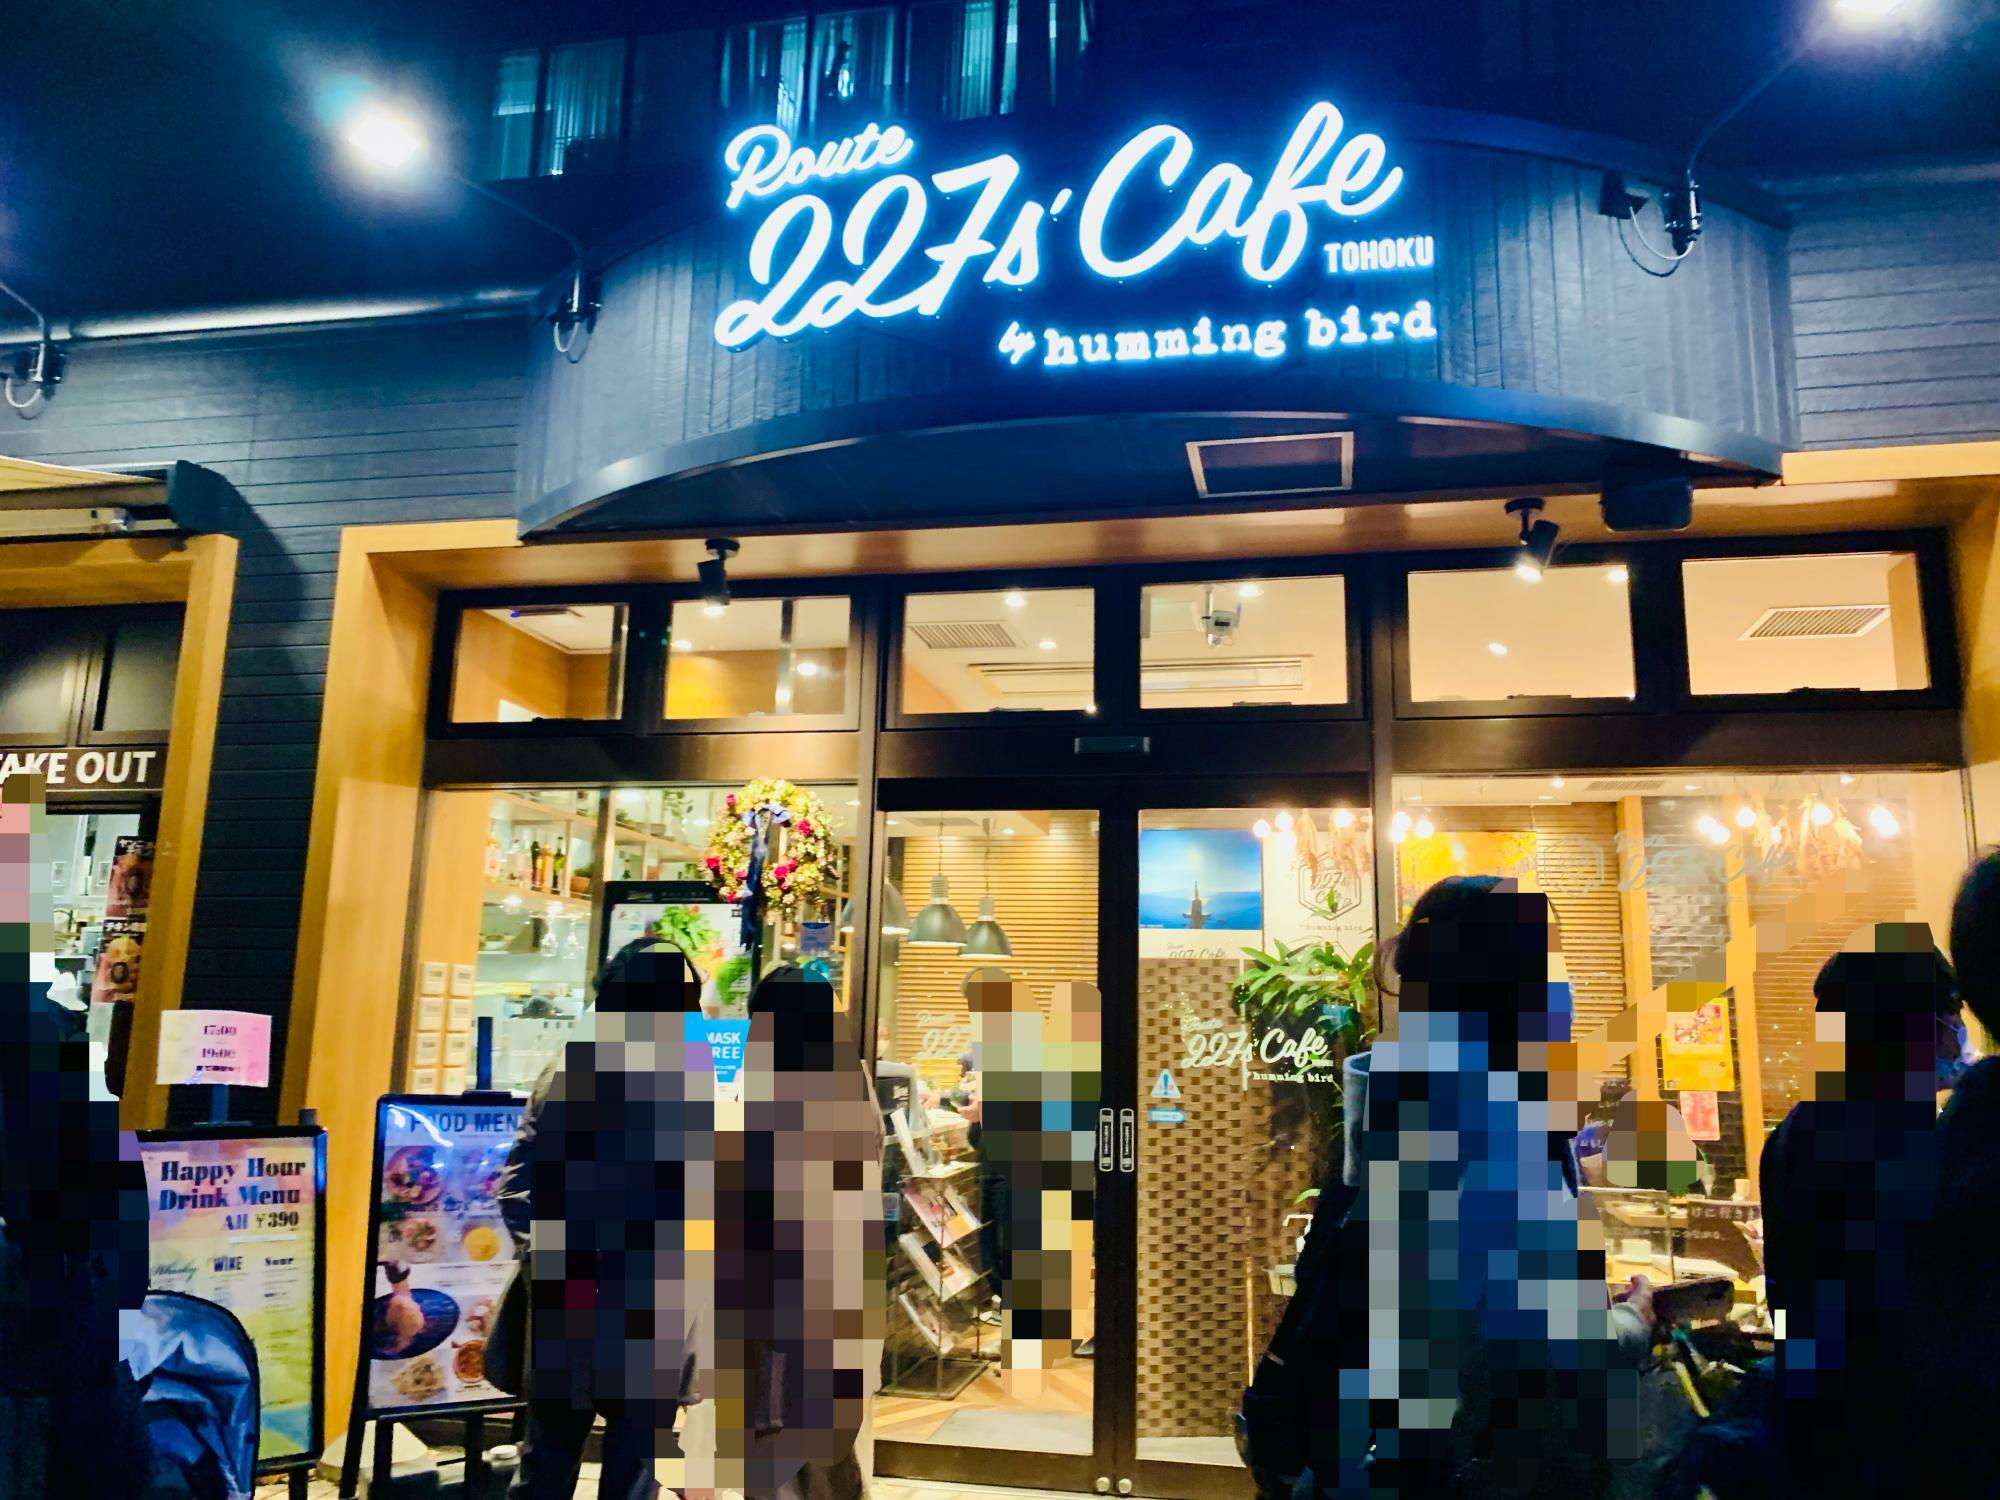 Route 227s' cafe TOHOKU　外観